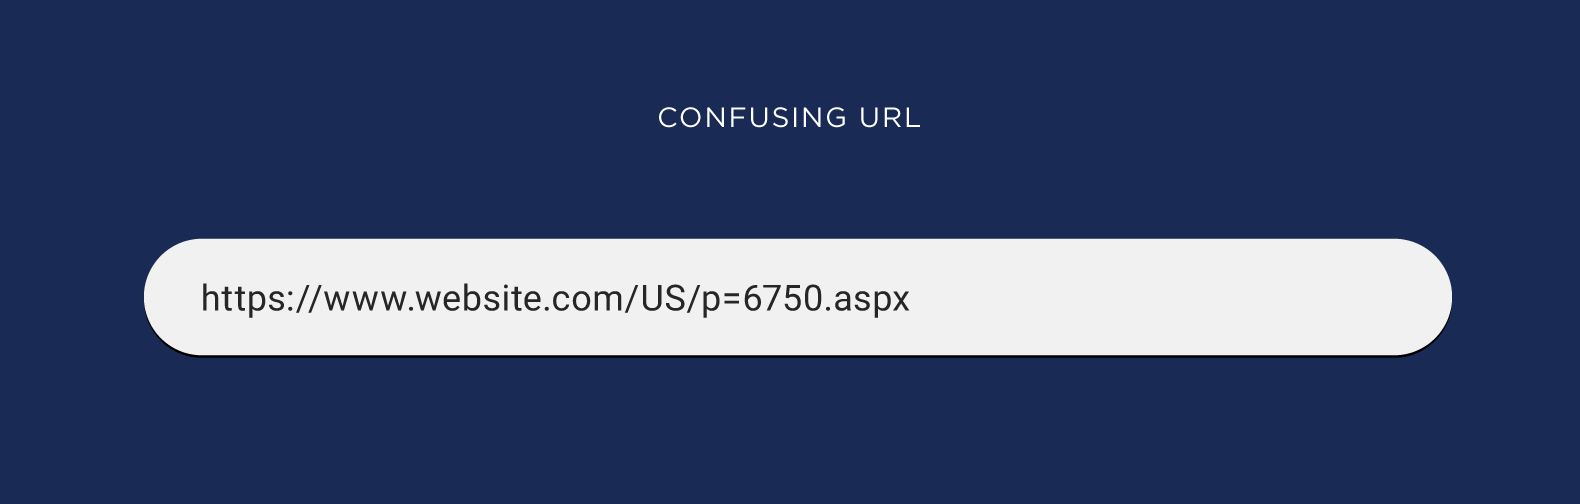 Confusing URL